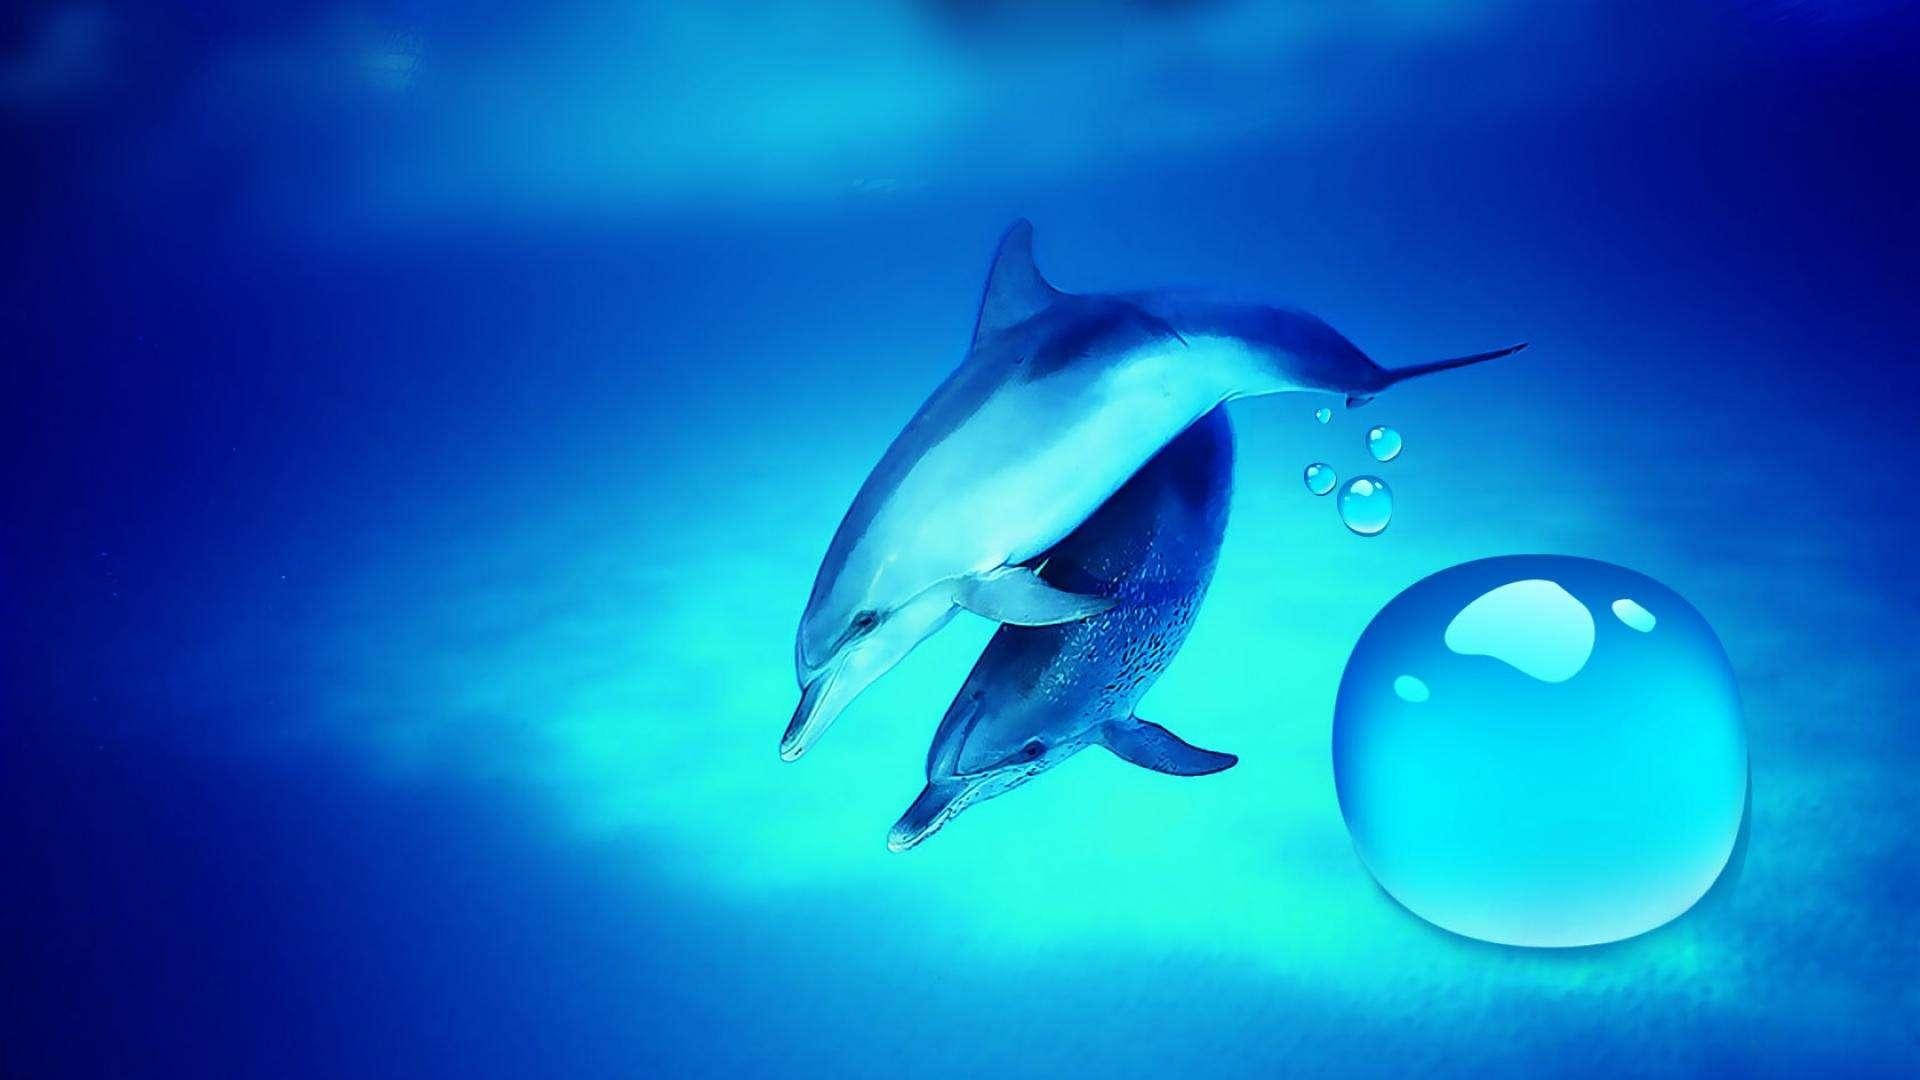 macOS 3D Screensavers - Dolphins - Deep-sea dolphins: 3D ocean screensaver